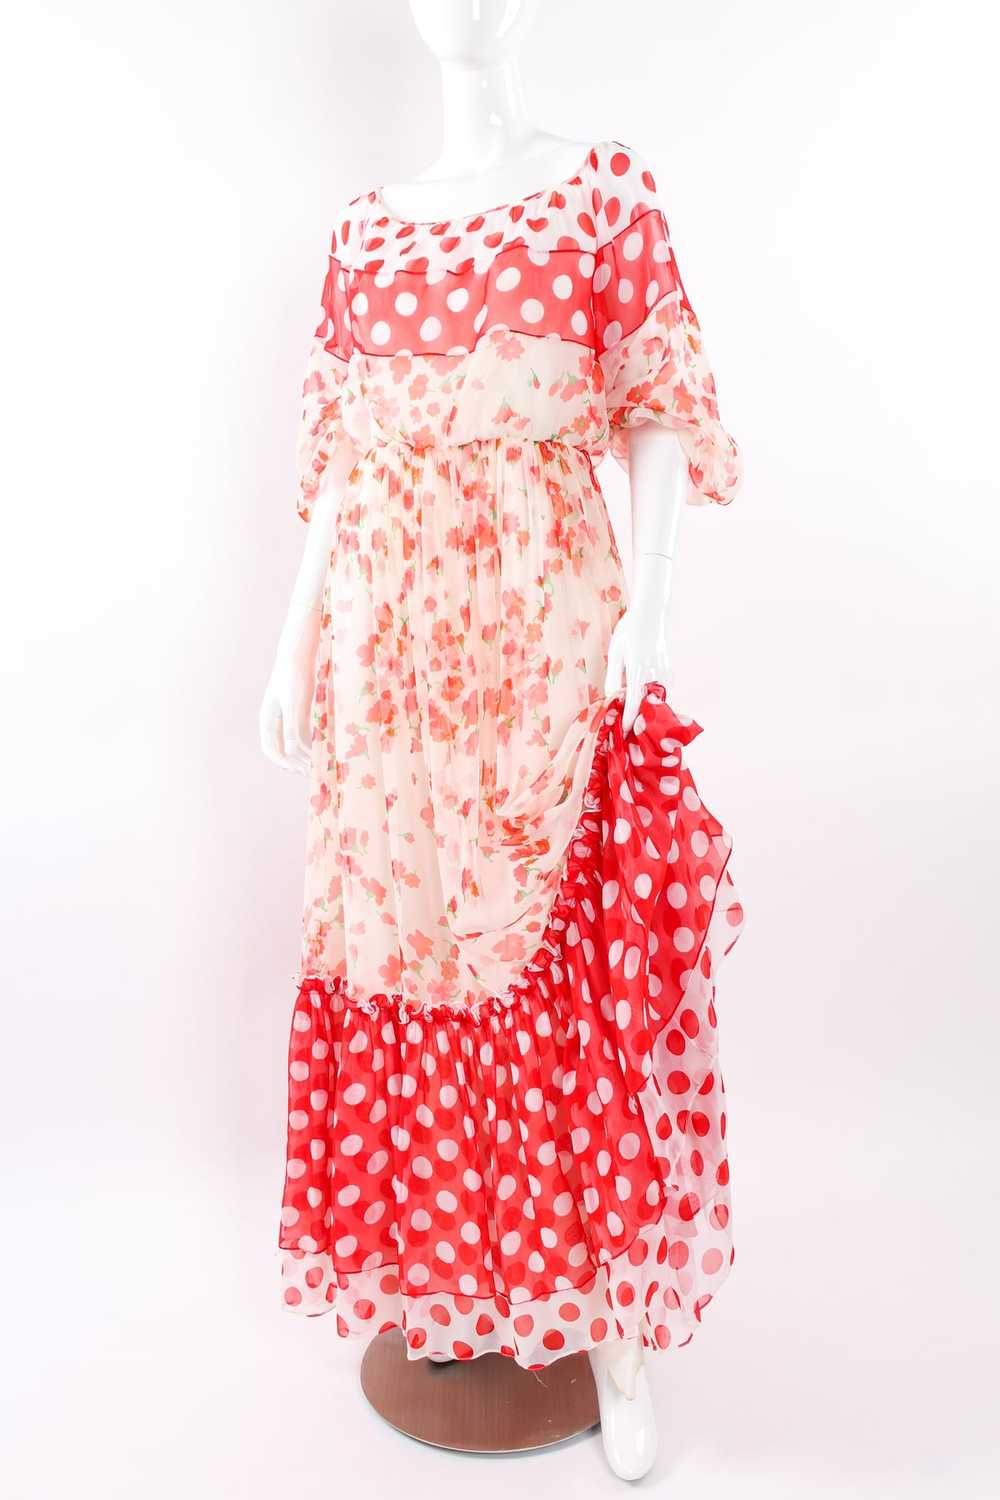 MIGNON Blooming Polka Dot Dress - image 6